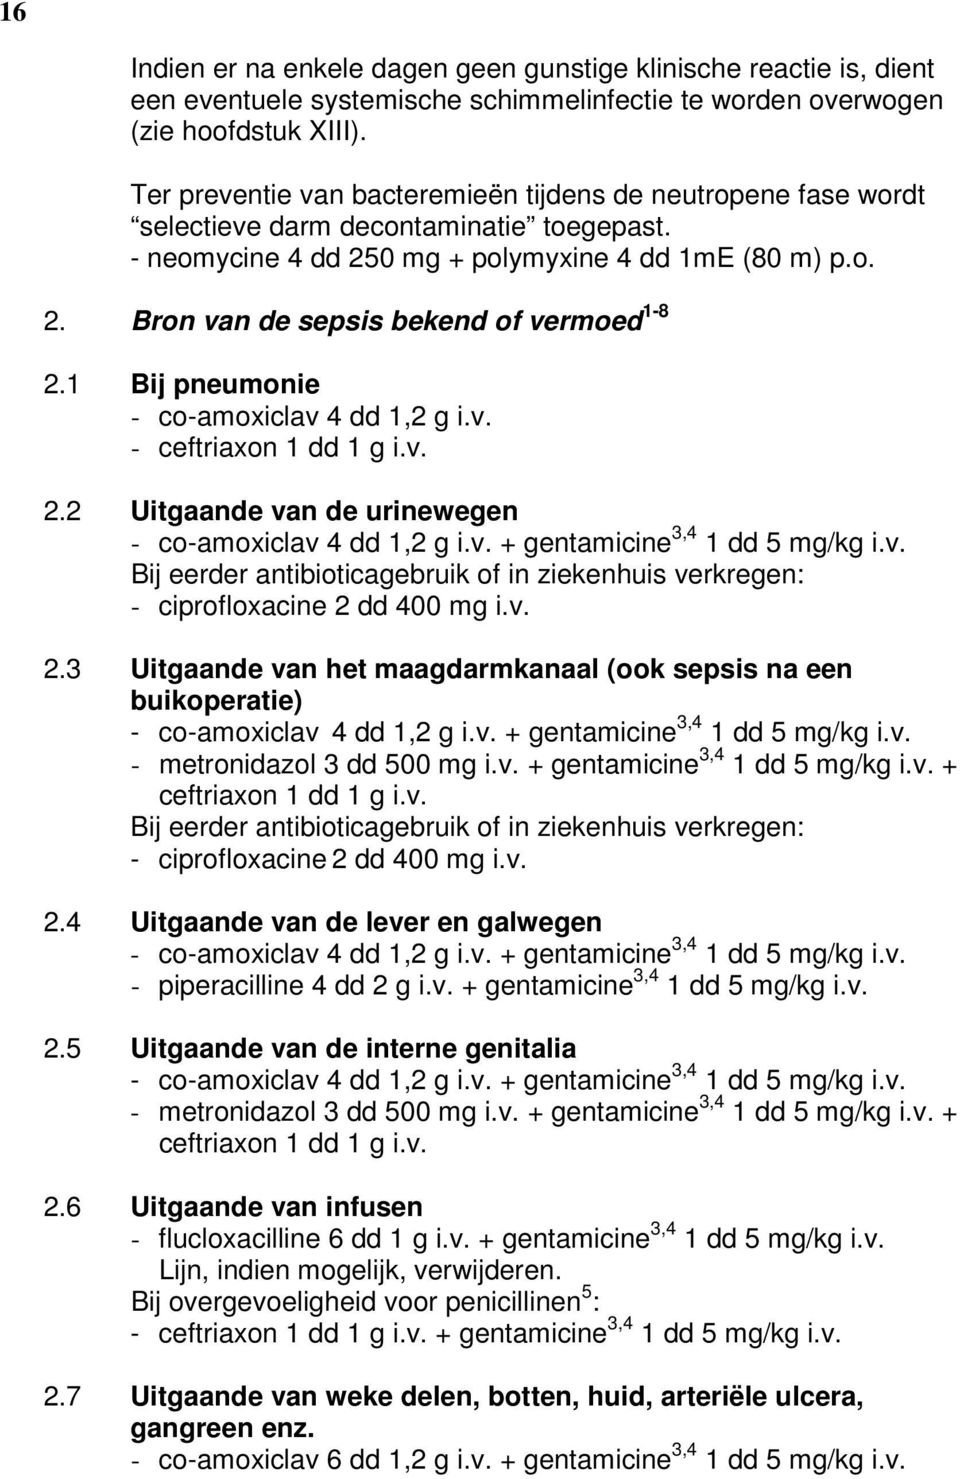 1 Bij pneumonie - co-amoxiclav 4 dd 1,2 g i.v. - ceftriaxon 1 dd 1 g i.v. 2.2 Uitgaande van de urinewegen - co-amoxiclav 4 dd 1,2 g i.v. + gentamicine 3,4 1 dd 5 mg/kg i.v. Bij eerder antibioticagebruik of in ziekenhuis verkregen: - ciprofloxacine 2 dd 400 mg i.